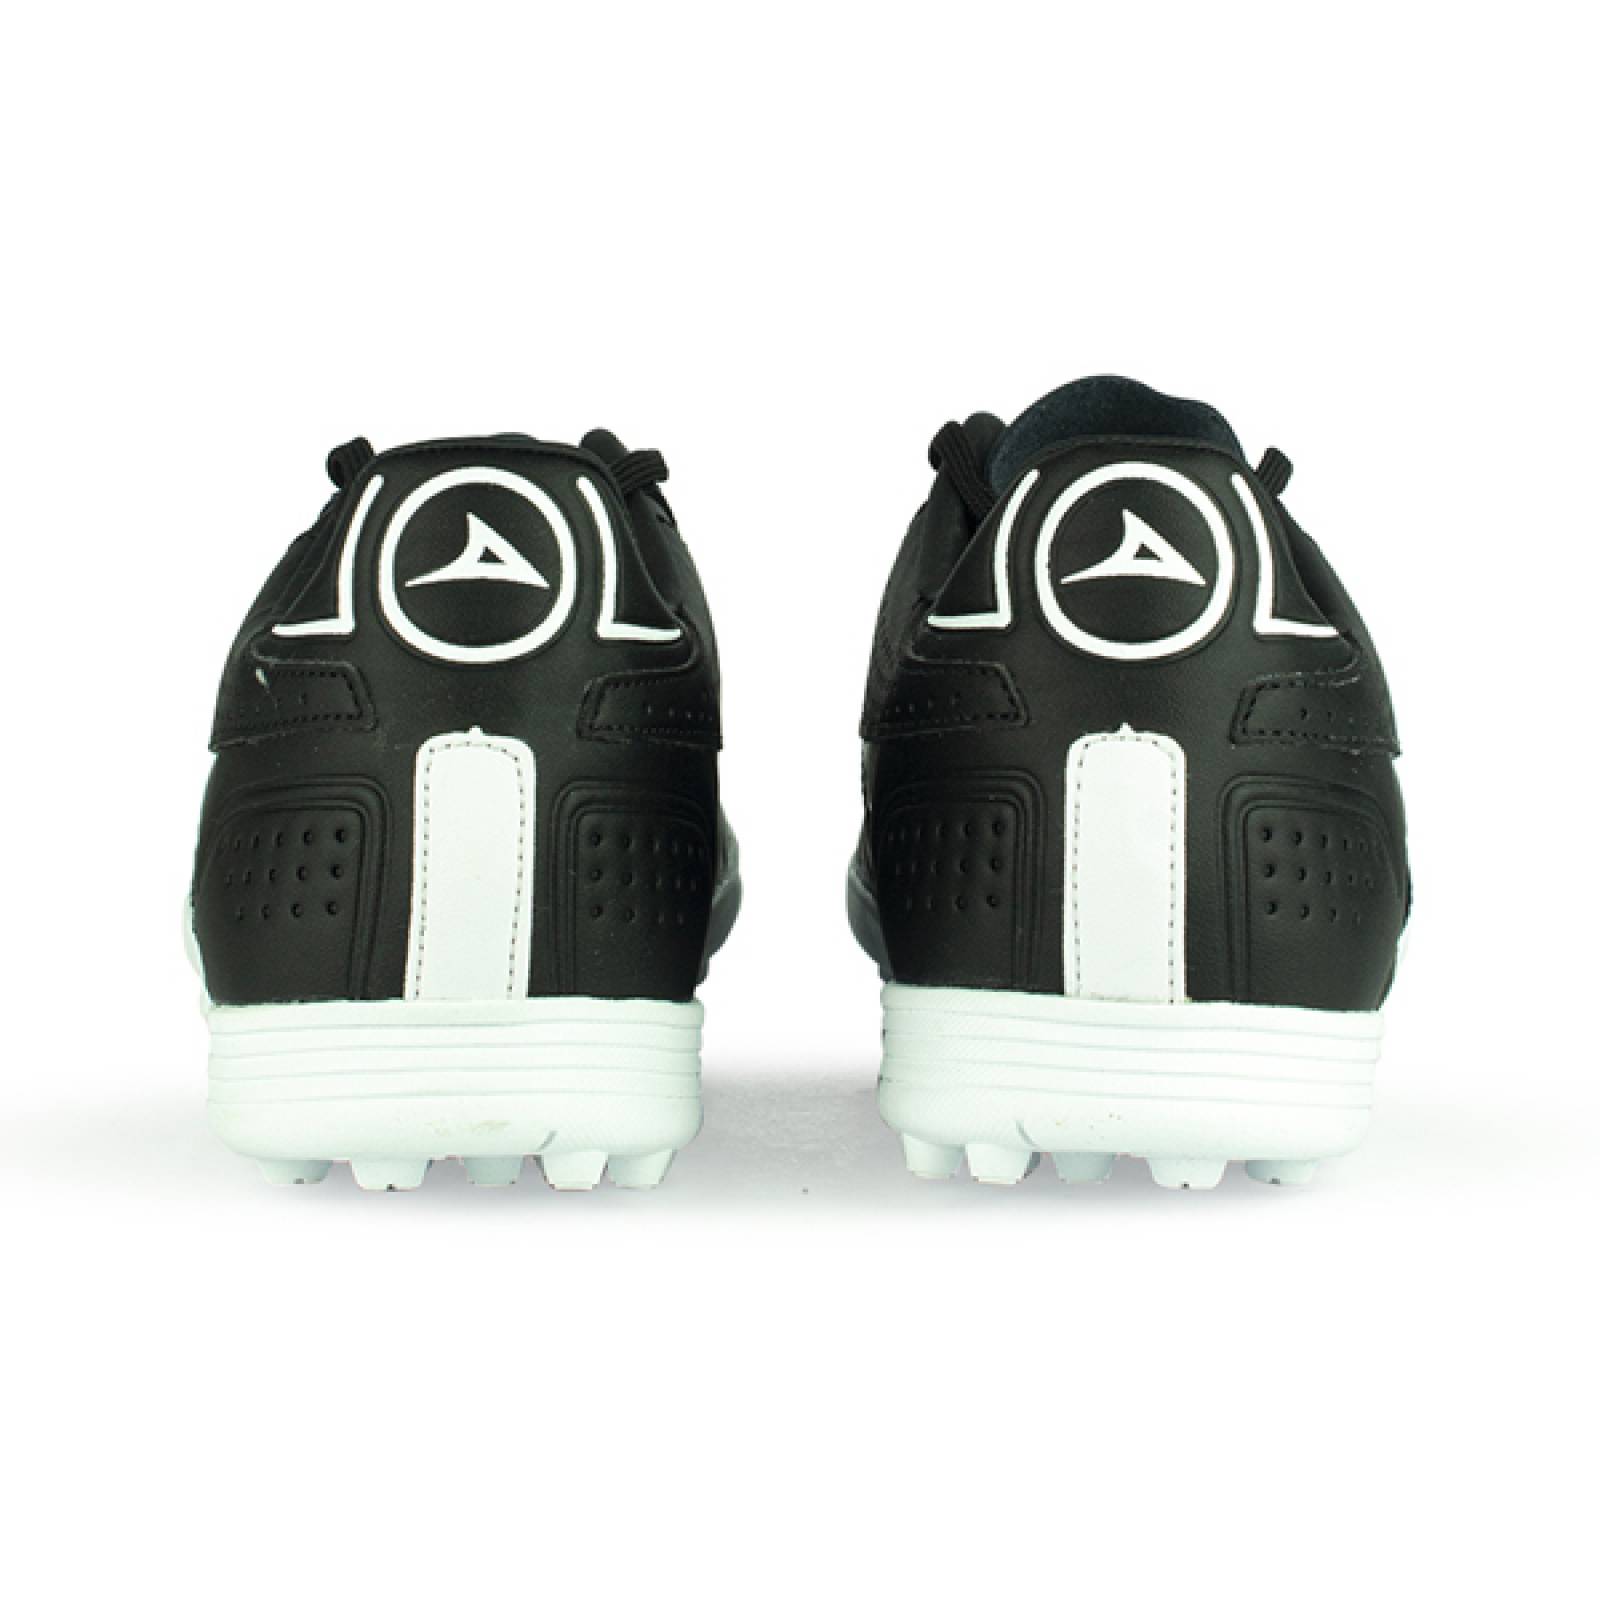 Zapatos Pirma De Futbol Rápido Para Hombre 3043 Blanco - Tenis Sport MX